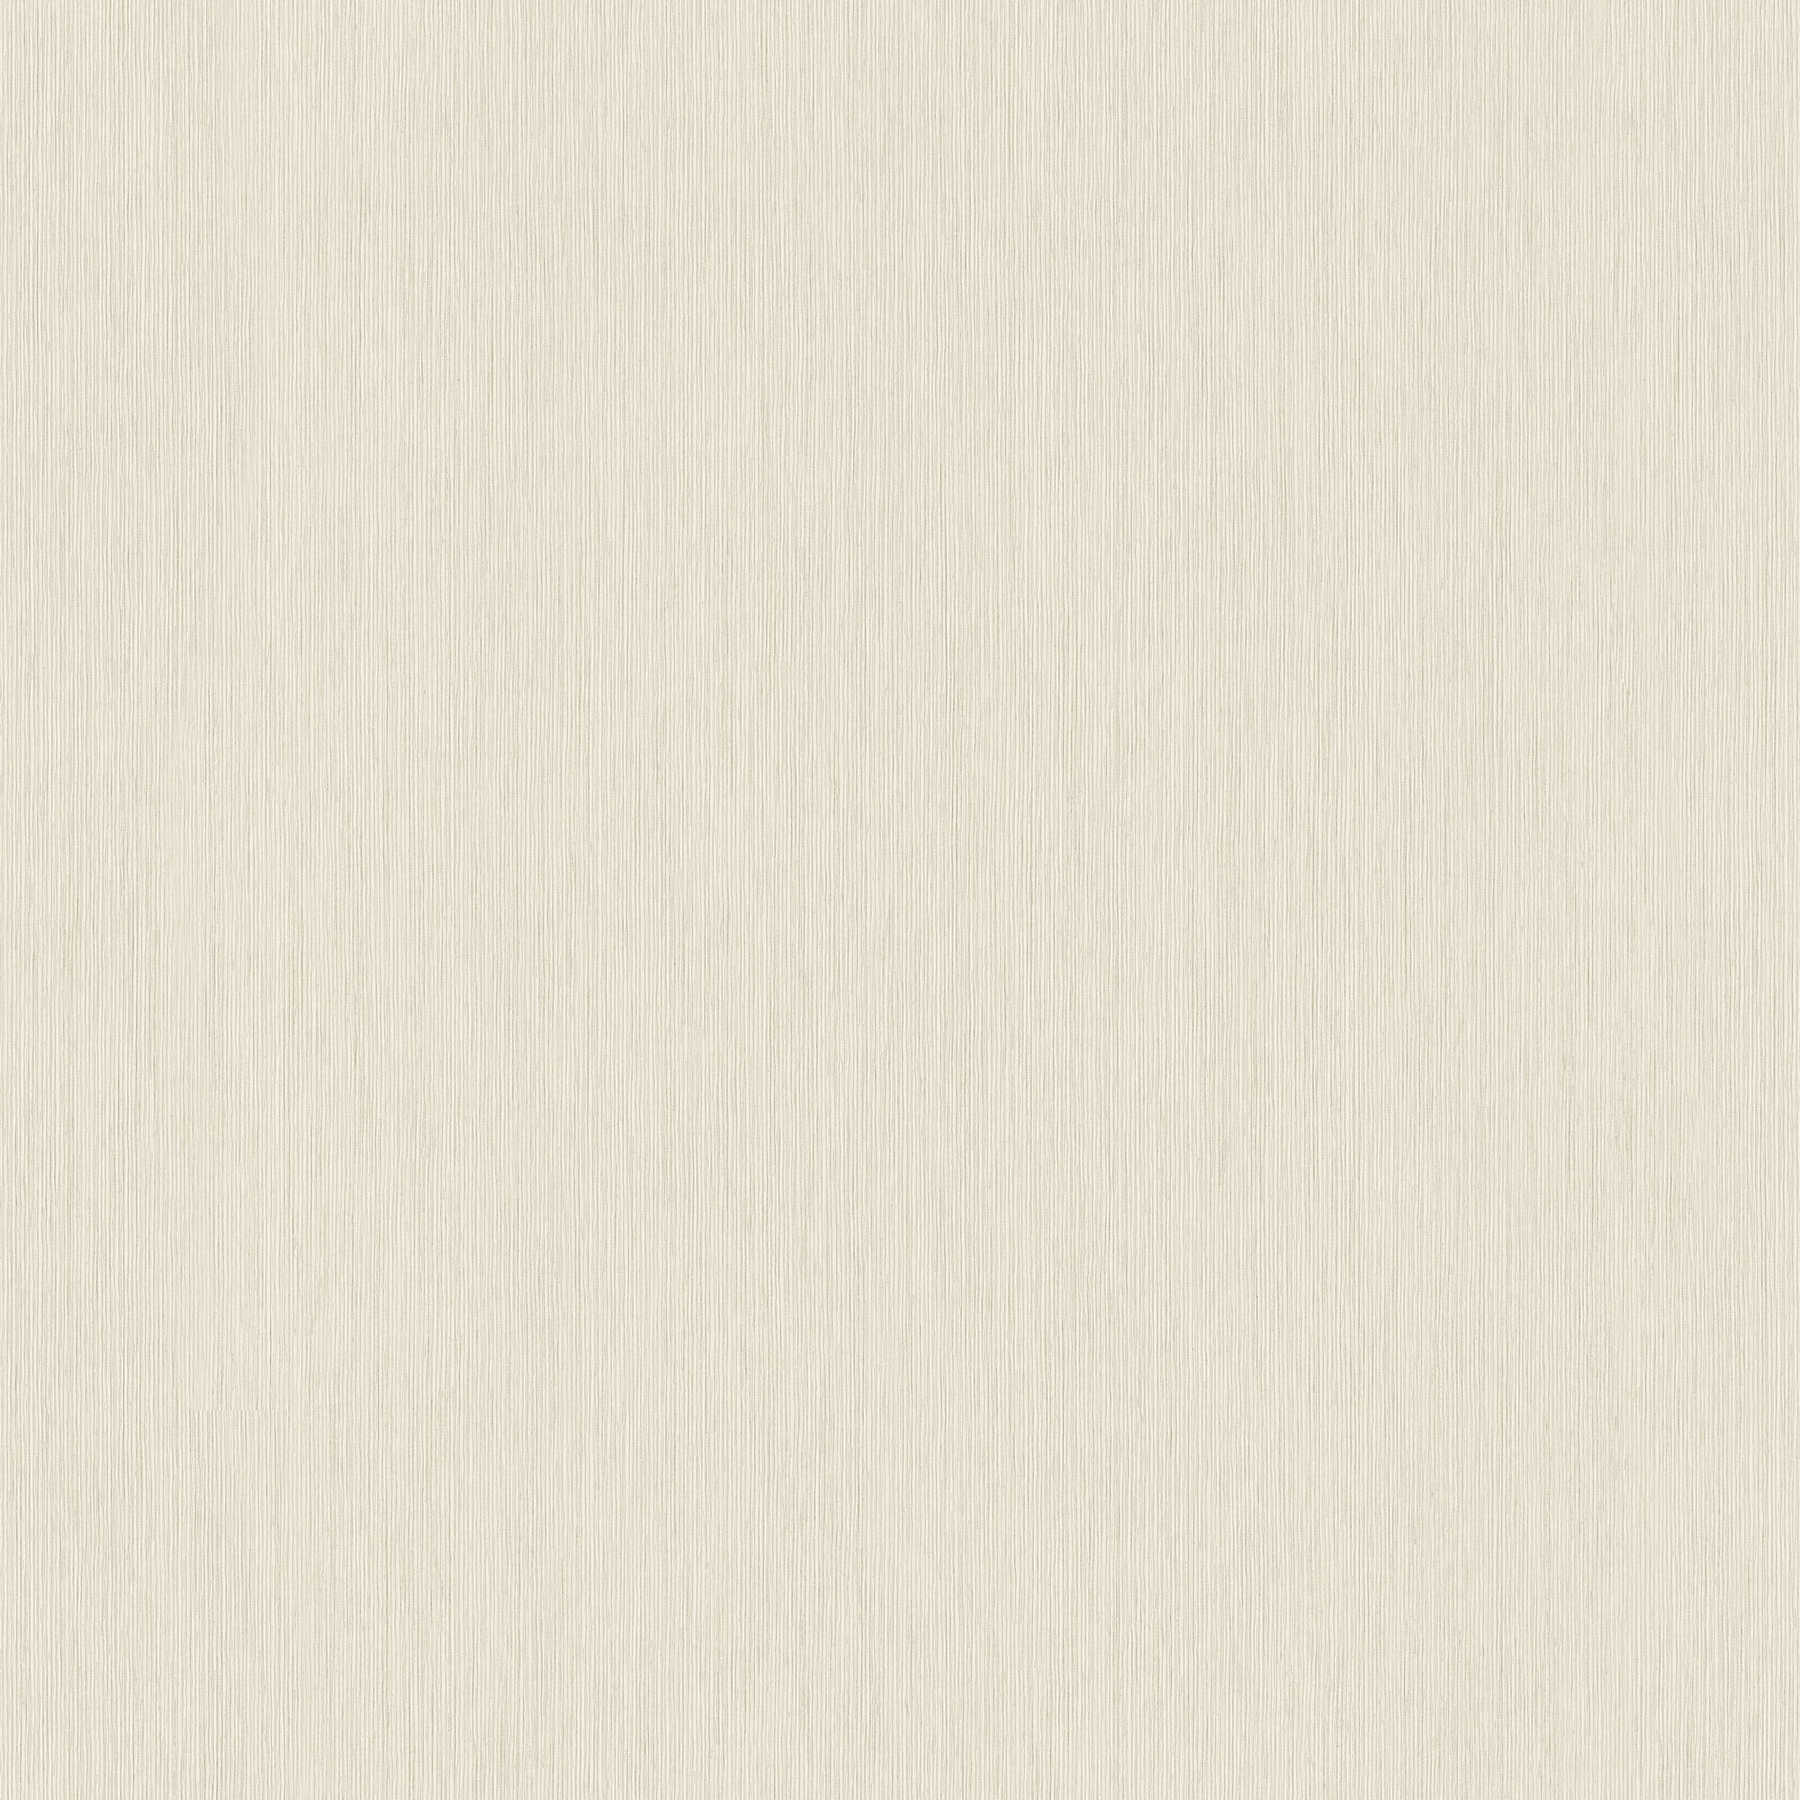 Papel pintado Melange beige-gris con textura en relieve forrado
